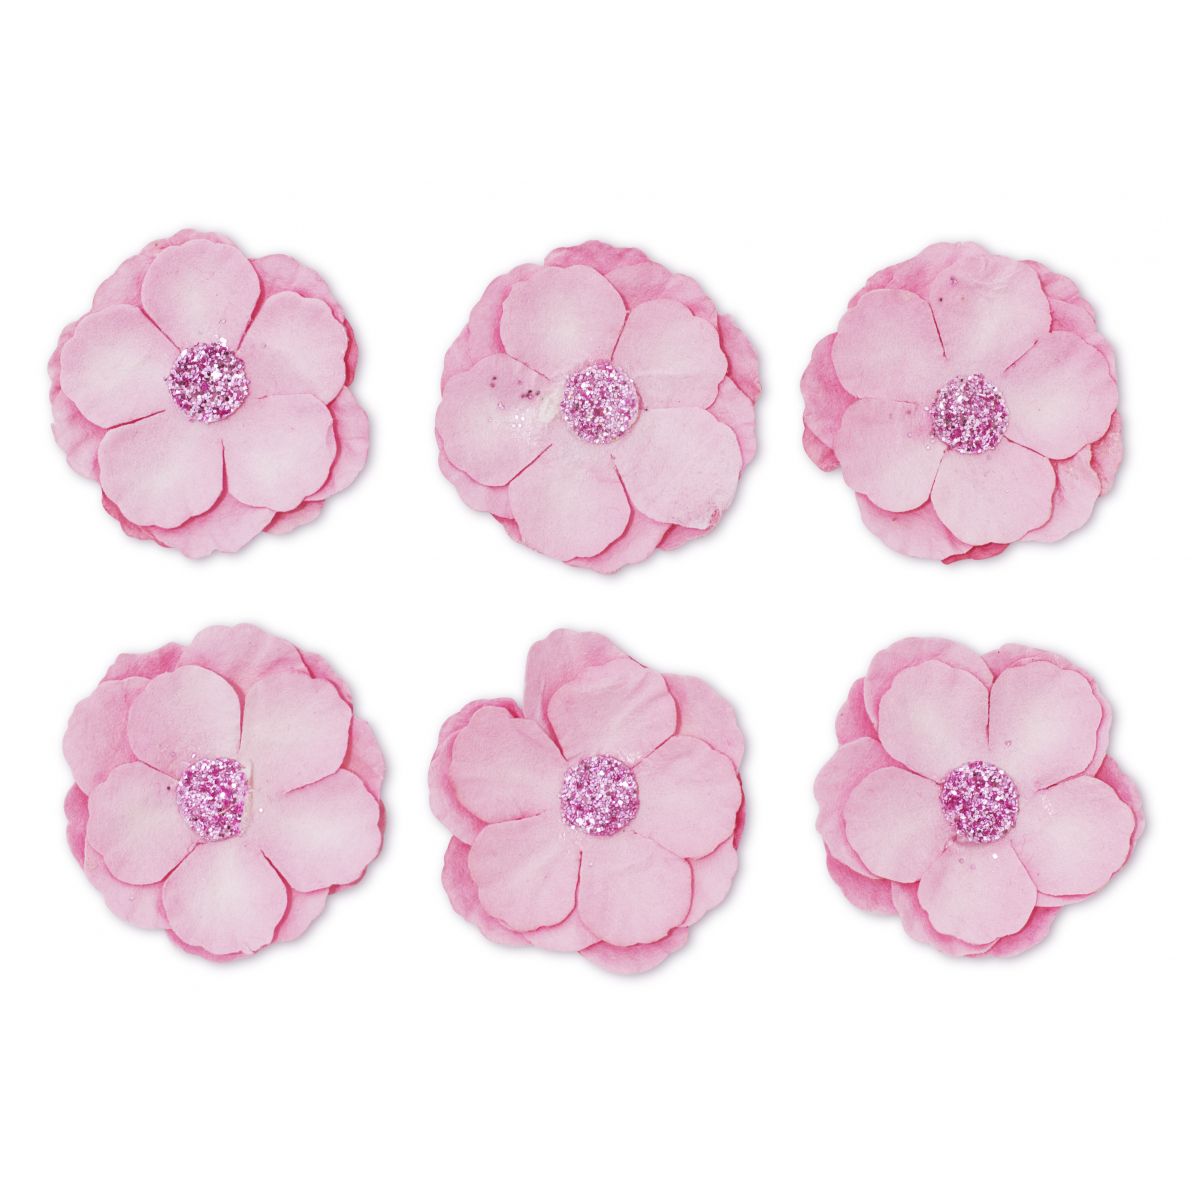 Ozdoba papierowa Galeria Papieru kwiaty samoprzylepne clematis różowe (252012)